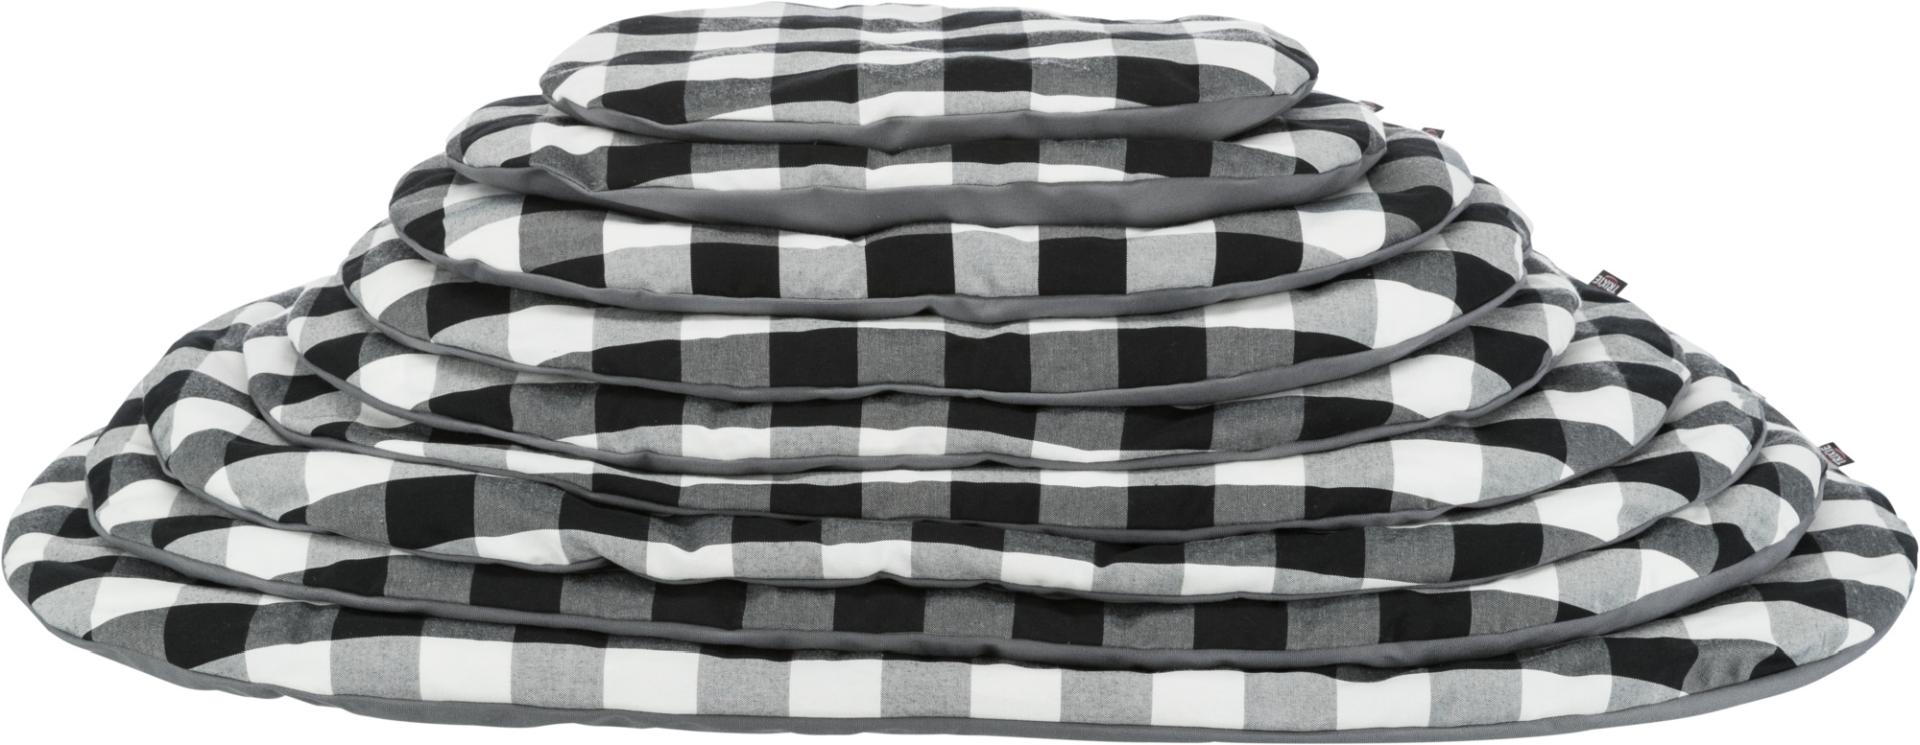 TRIXIE Kissen Scoopy, oval, 44 x 31 cm, schwarz / weiß / grau